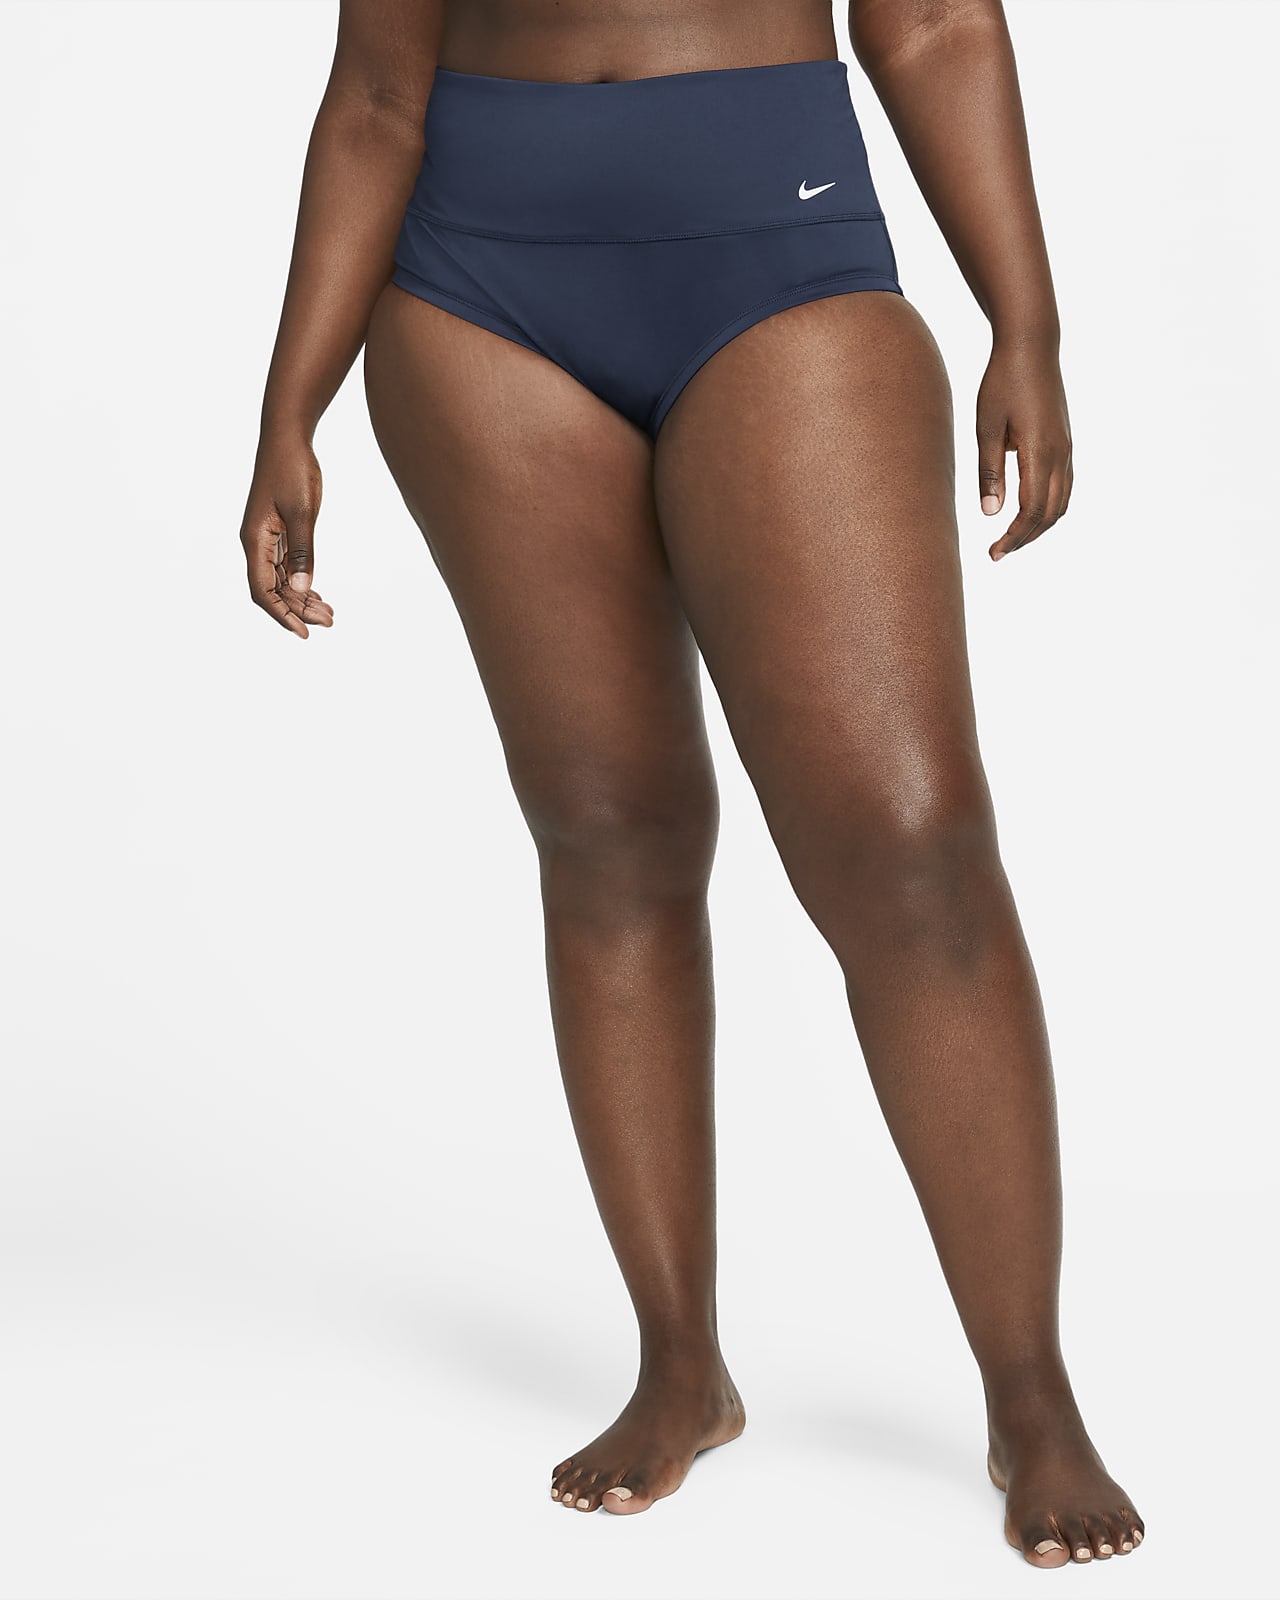 Mujer Ropa interior parte de arriba. Nike US